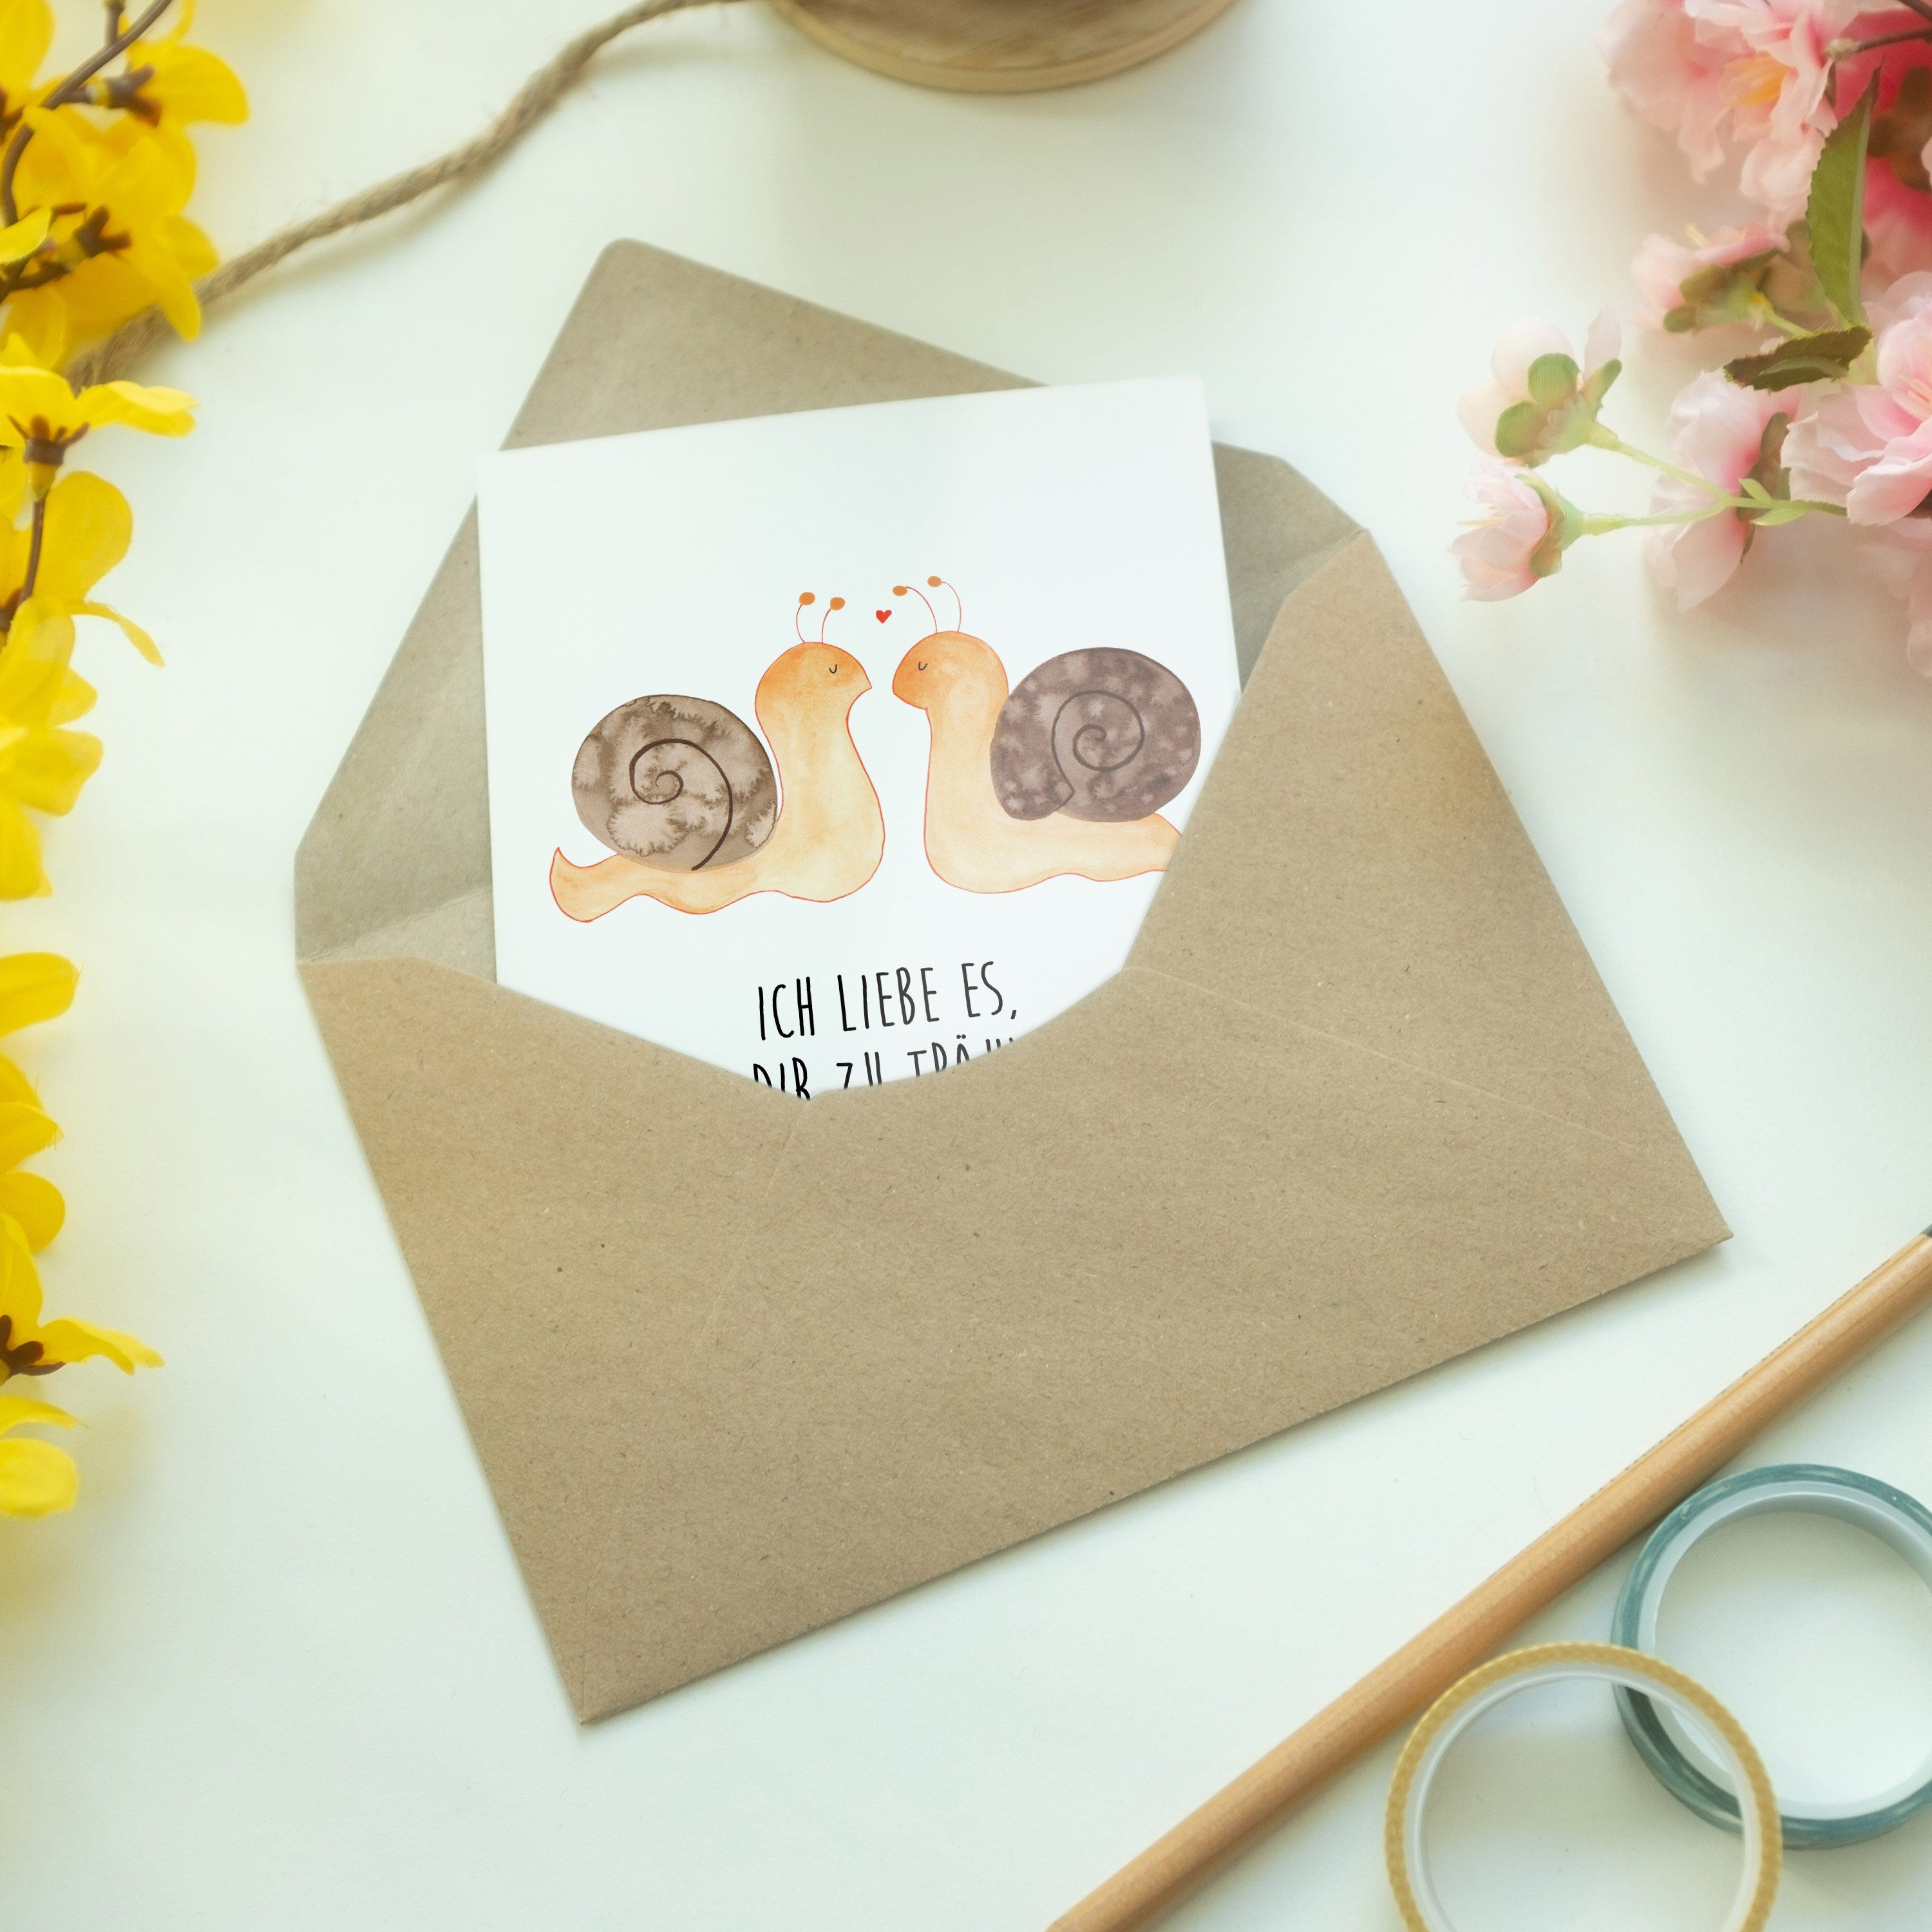 Mr. & Mrs. Panda Schnecken - Weiß Grußkarte Verlobung, zufried Hochzeitskarte, Liebe - Geschenk